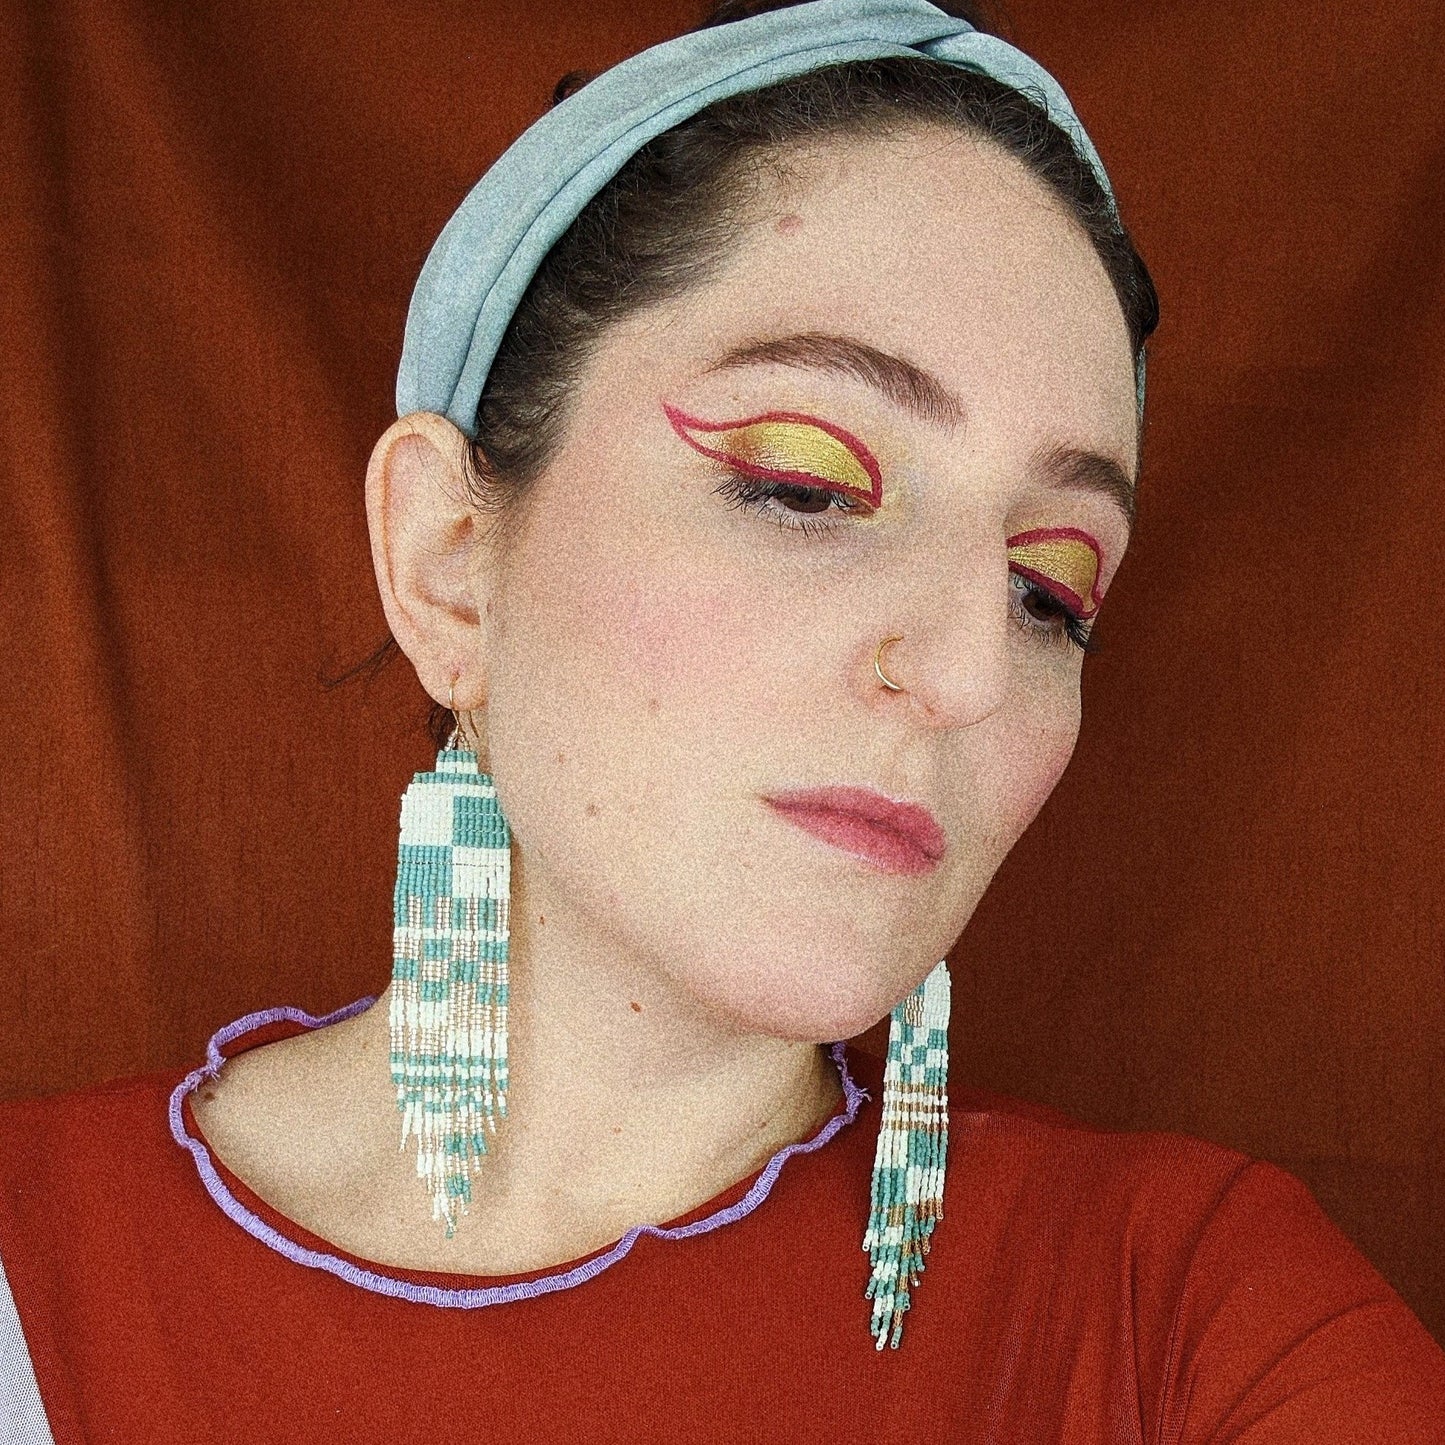 Large Checkerboard Beaded Earrings (3 Colorways)